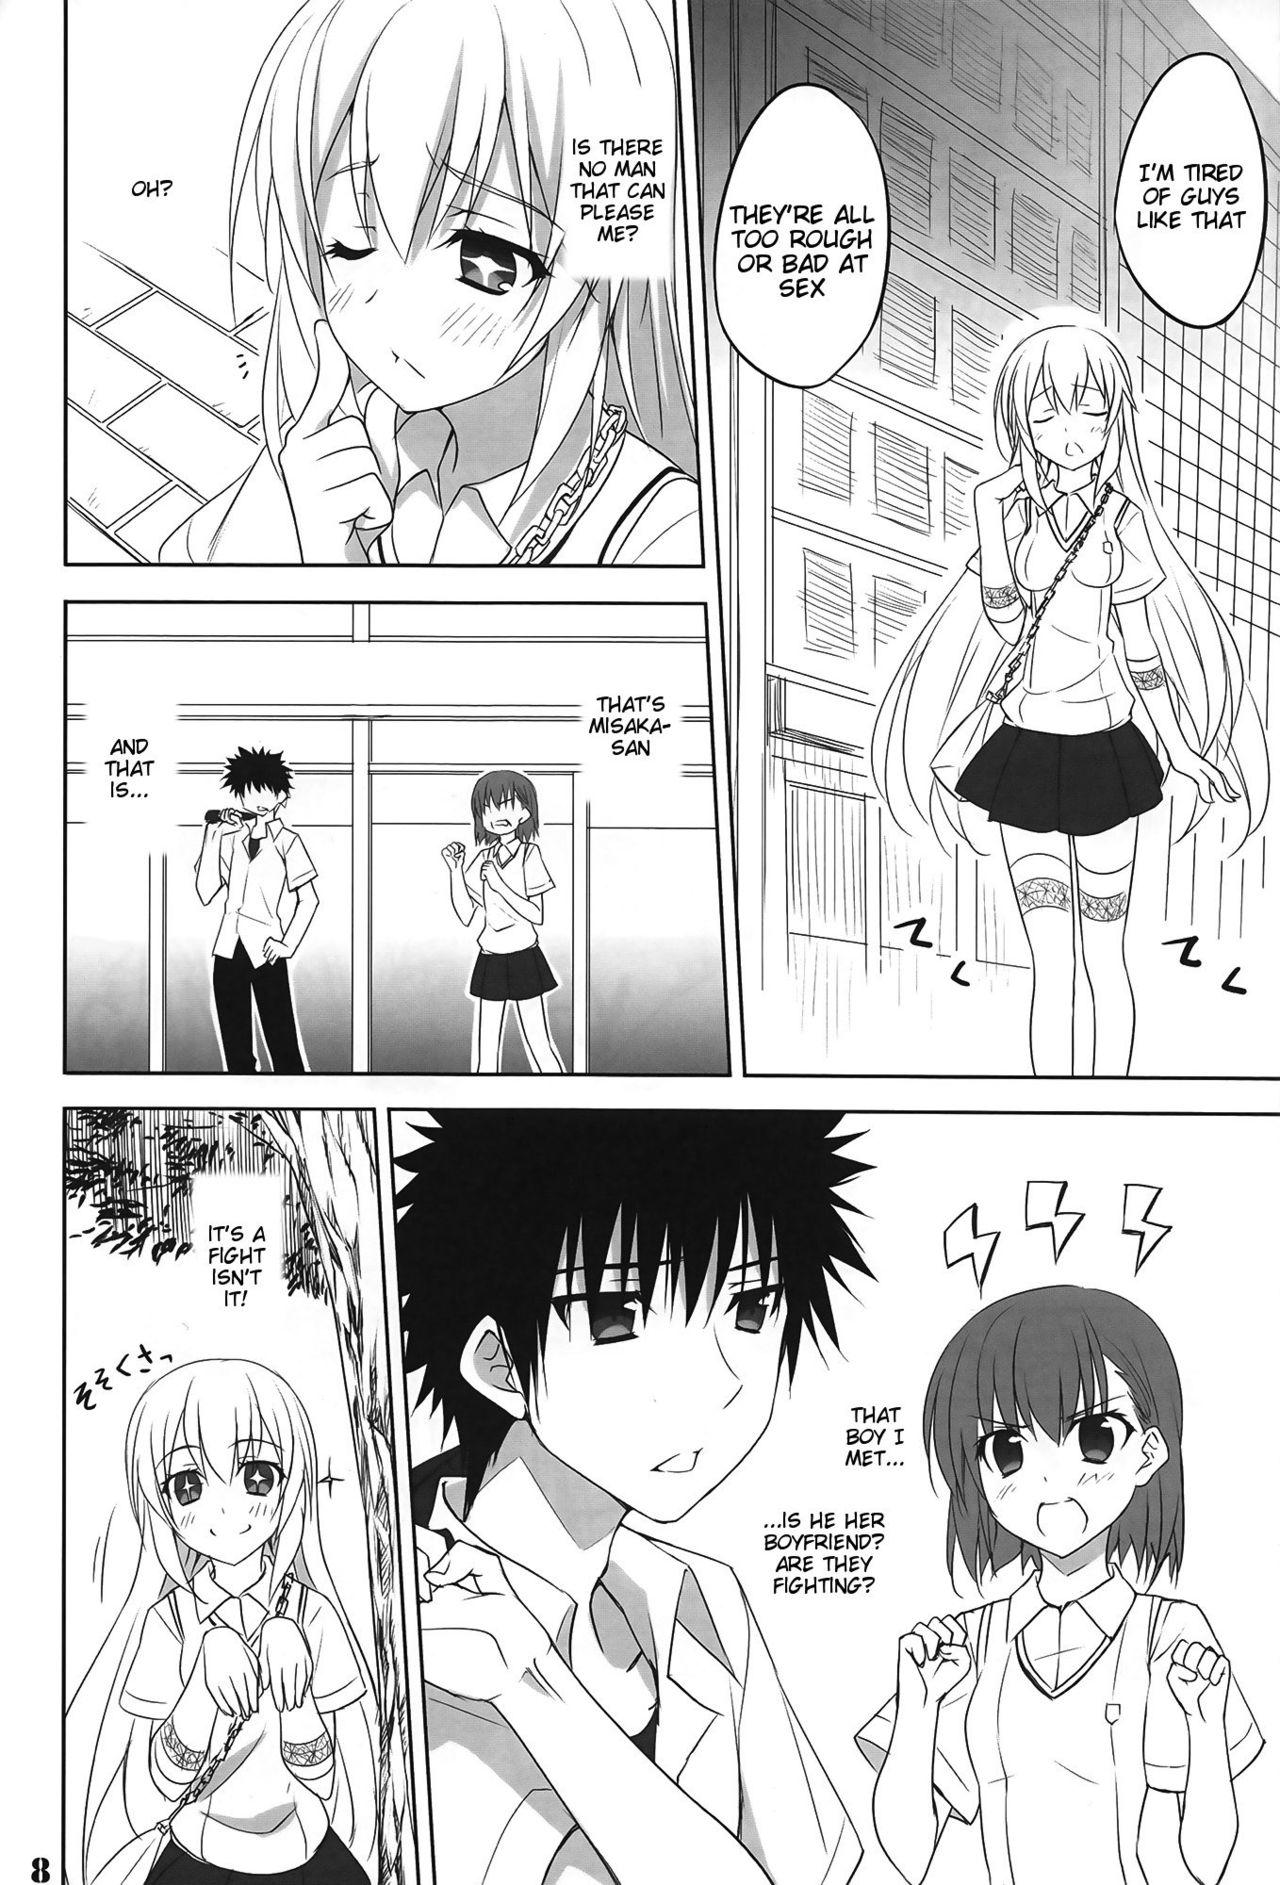 Hot Whores Toaru Shokuhou no Frustration - Toaru kagaku no railgun Ejaculations - Page 7